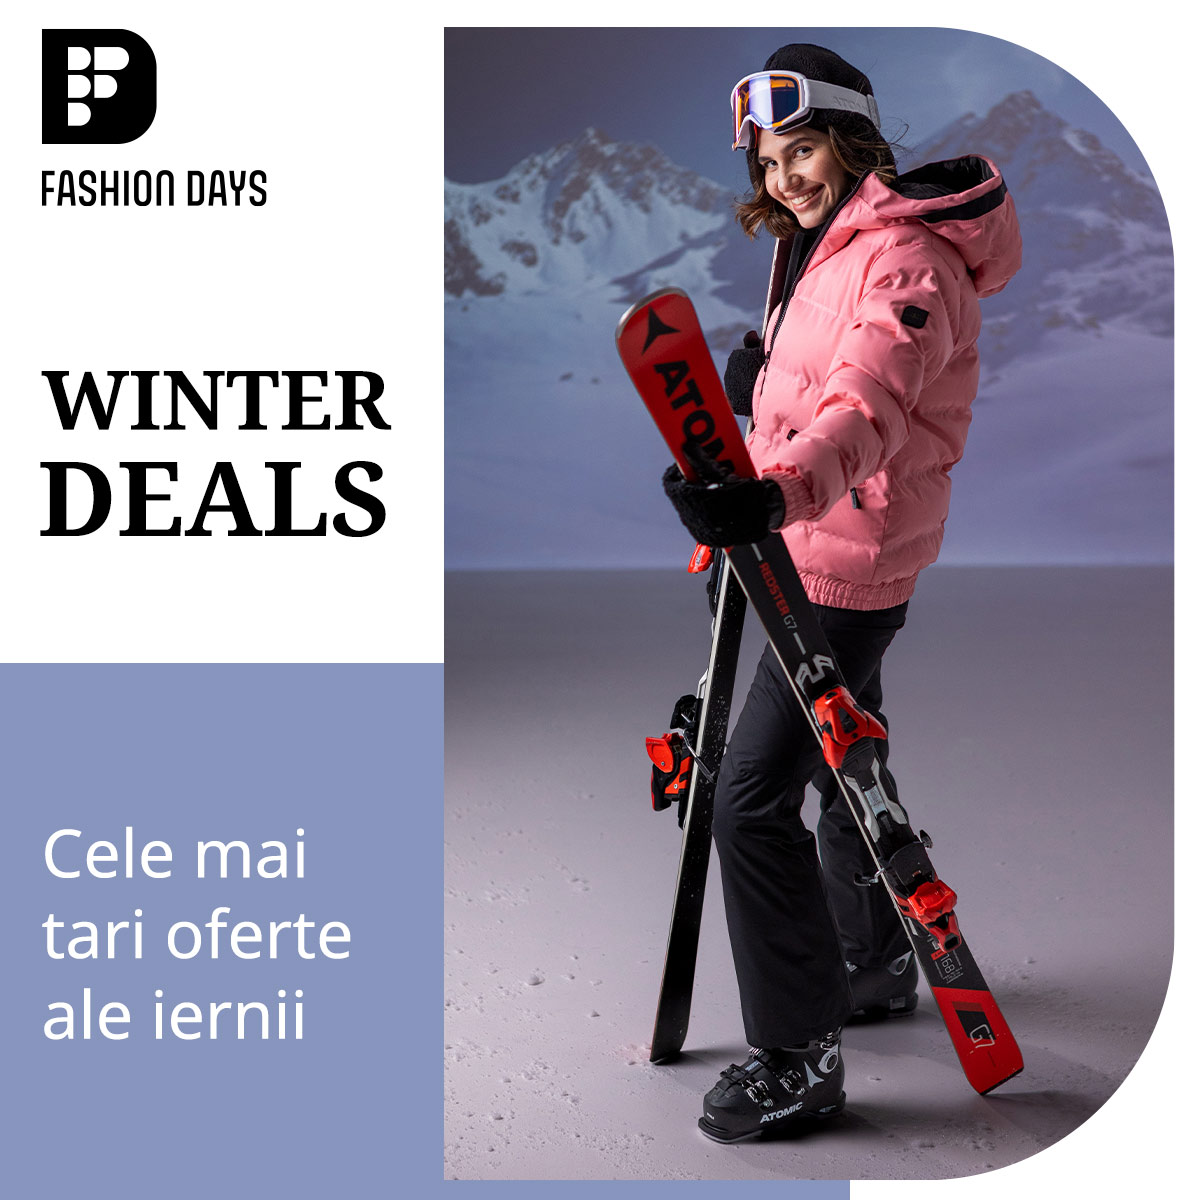 Winter Deals - cele mai tari oferte ale iernii (bannere femei)